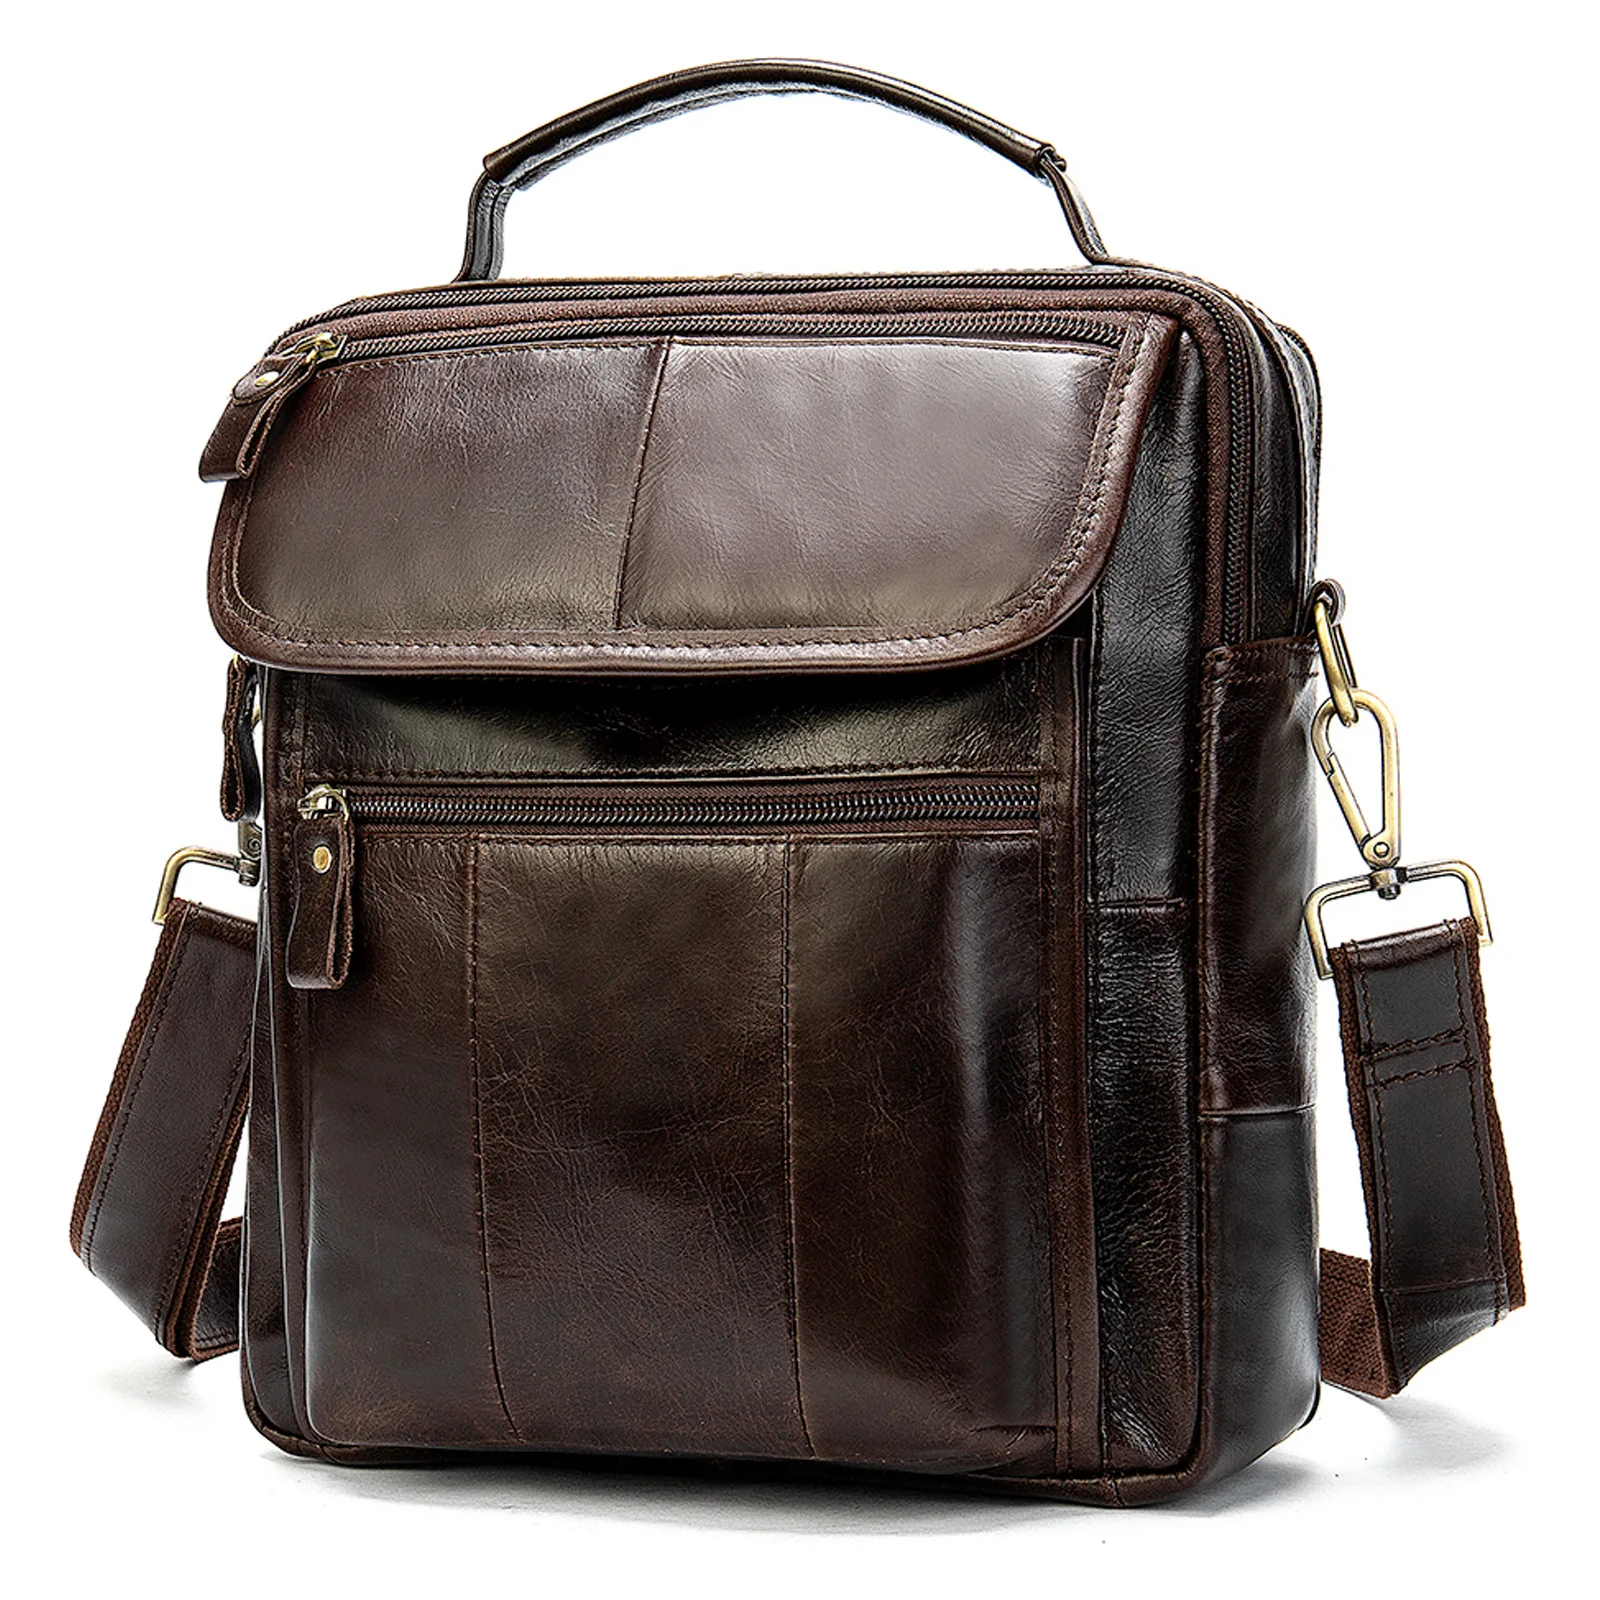 

Вместительная Дизайнерская кожаная сумка на плечо в стиле ретро, роскошный качественный мессенджер, повседневный большой брендовый мужской портфель